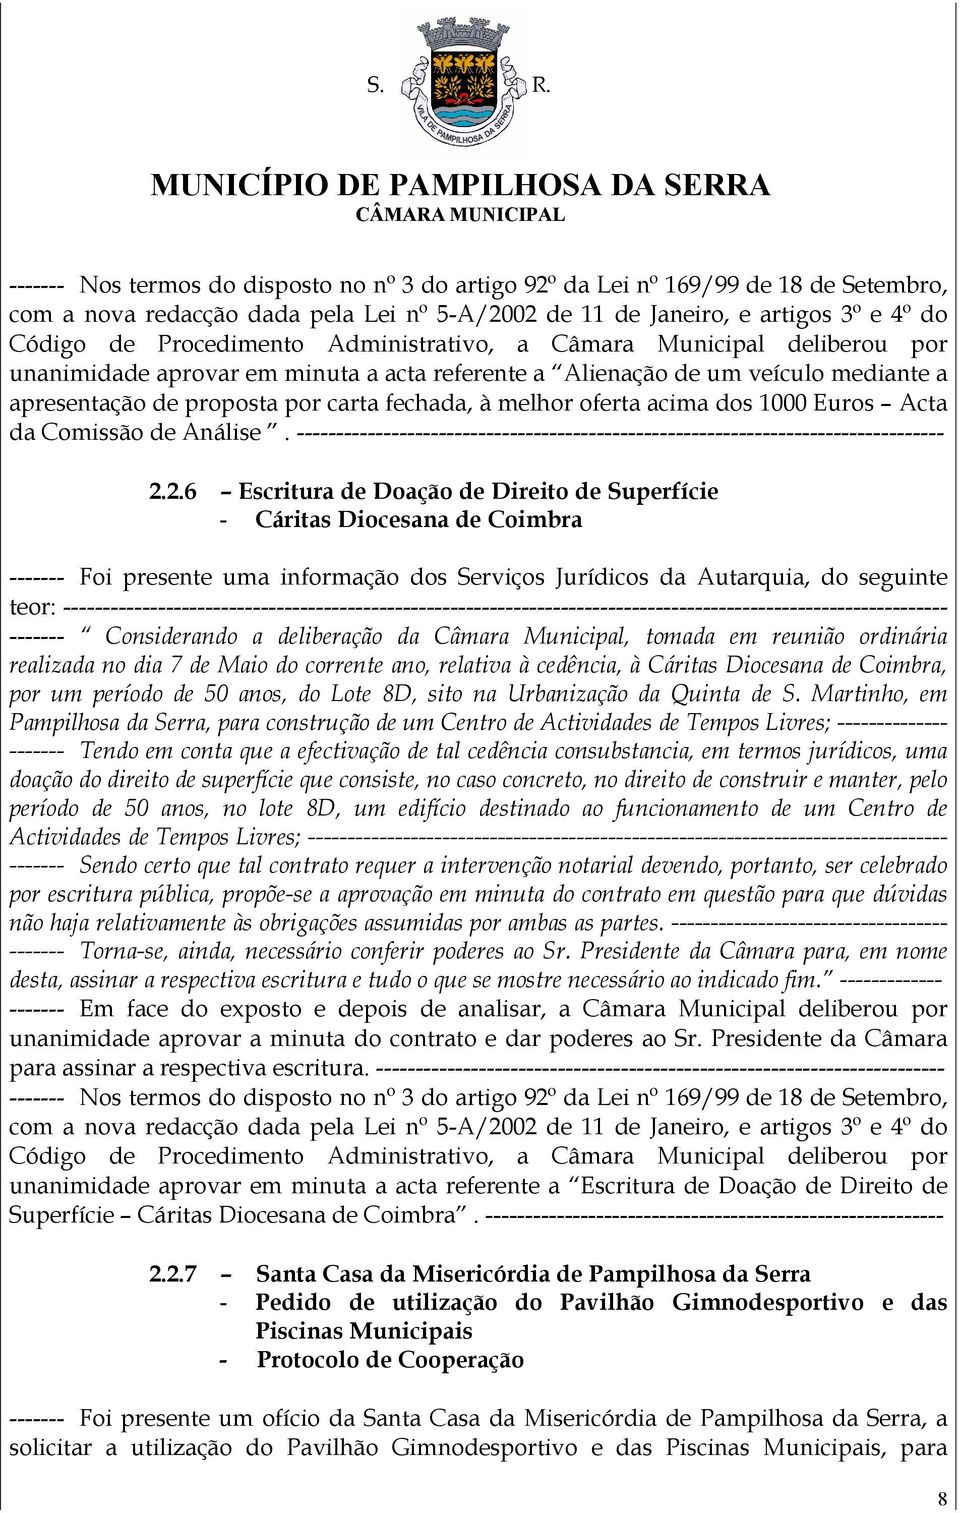 2.6 Escritura de Doação de Direito de Superfície - Cáritas Diocesana de Coimbra ------- Foi presente uma informação dos Serviços Jurídicos da Autarquia, do seguinte teor: